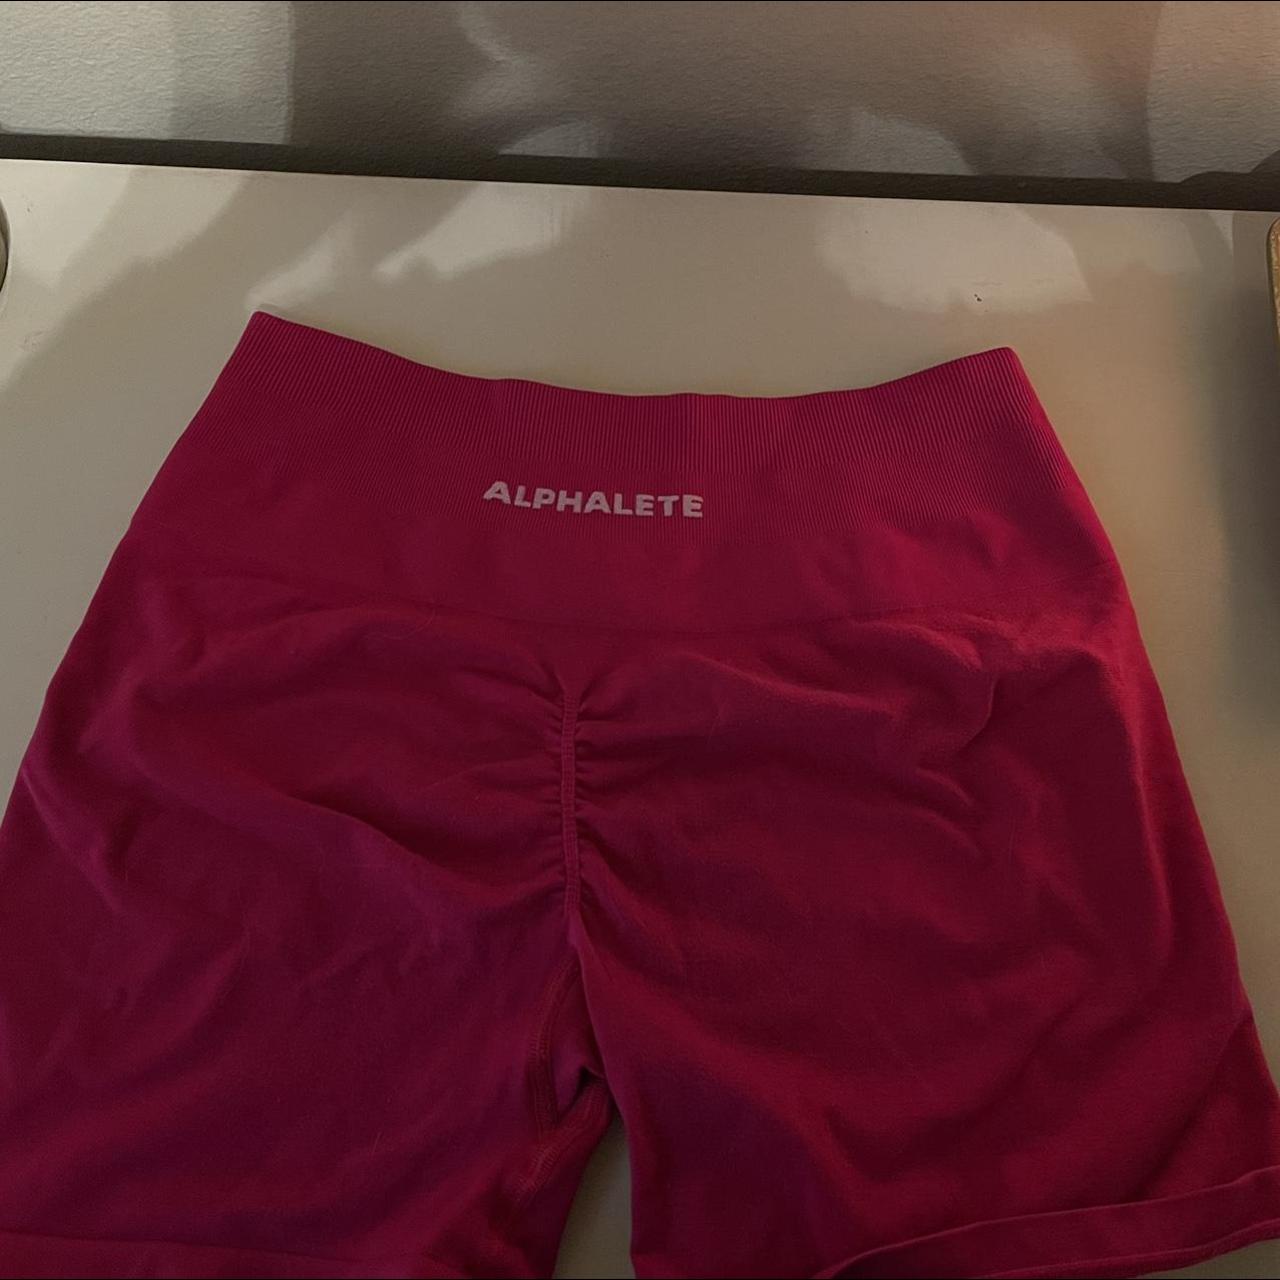 Alphalete Amplify hot pink shorts  Hot pink shorts, Pink shorts, Gym shorts  womens